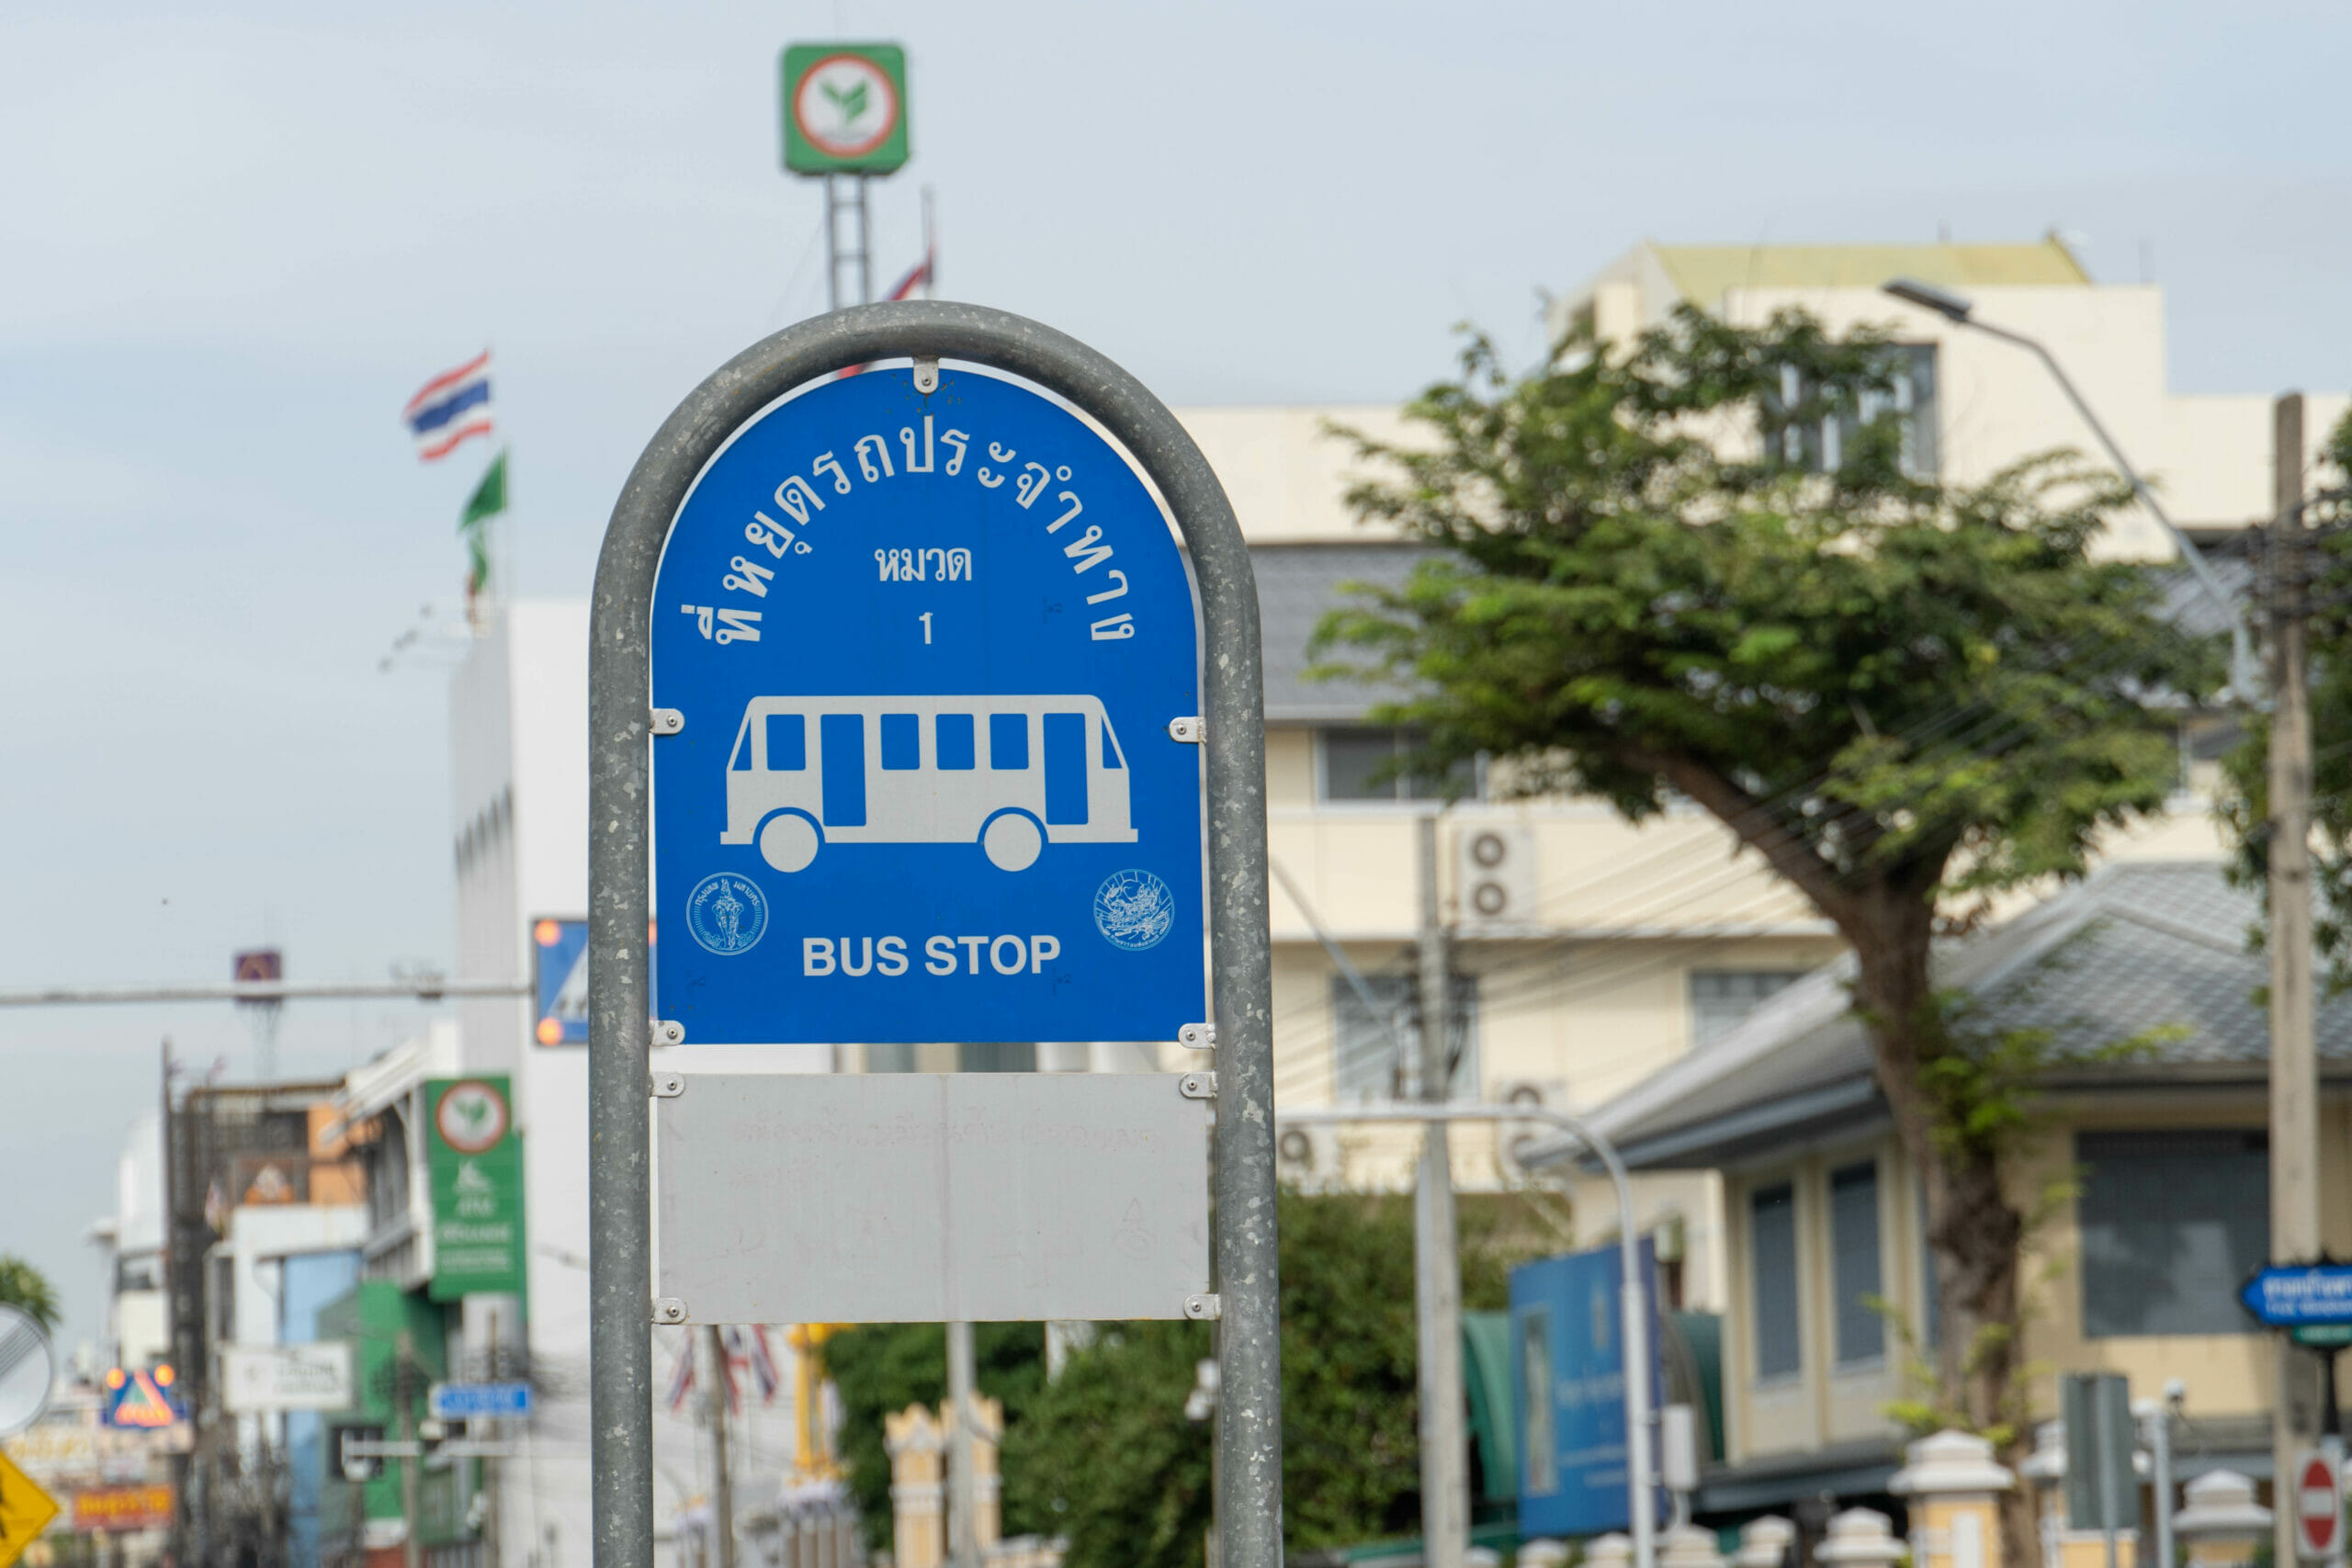 Busfahren in Bangkok – Meine Erfahrung & was ich gelernt habe